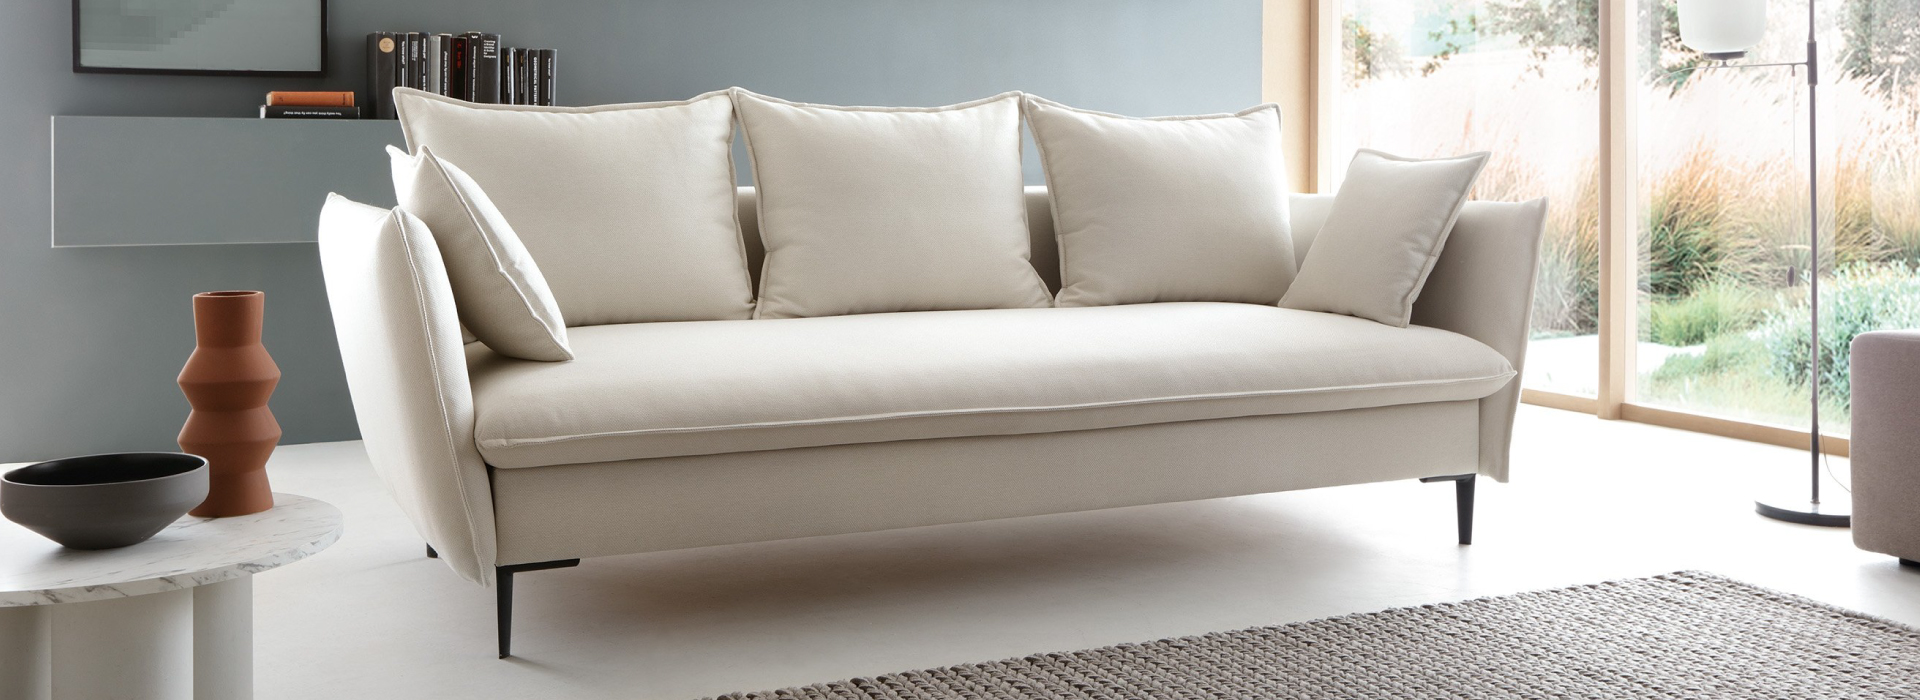 Jasnobeżowa sofa z trzema dużymi poduszkami i dwoma mniejszymi na czarnych, metalowych nóżkach. W tle ściana z półką oraz biały stolik kawowy.